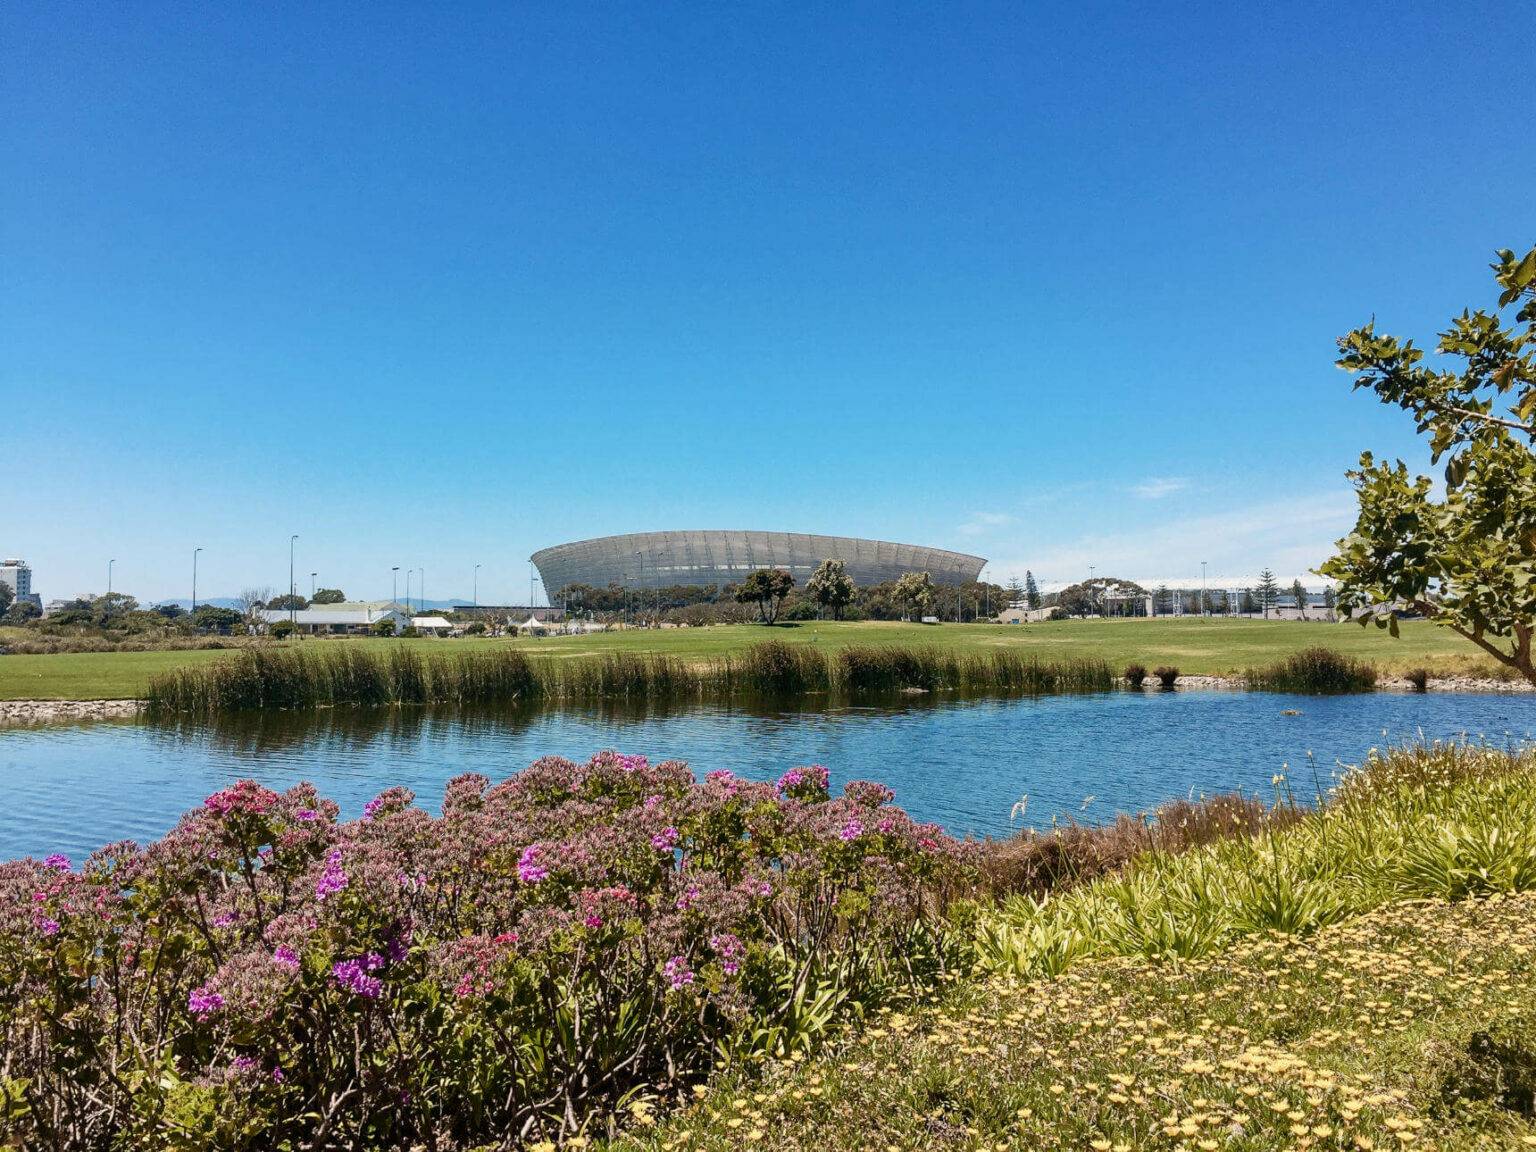 Vom Green Point Park ist das Stadion von Kapstadt gut zu sehen.